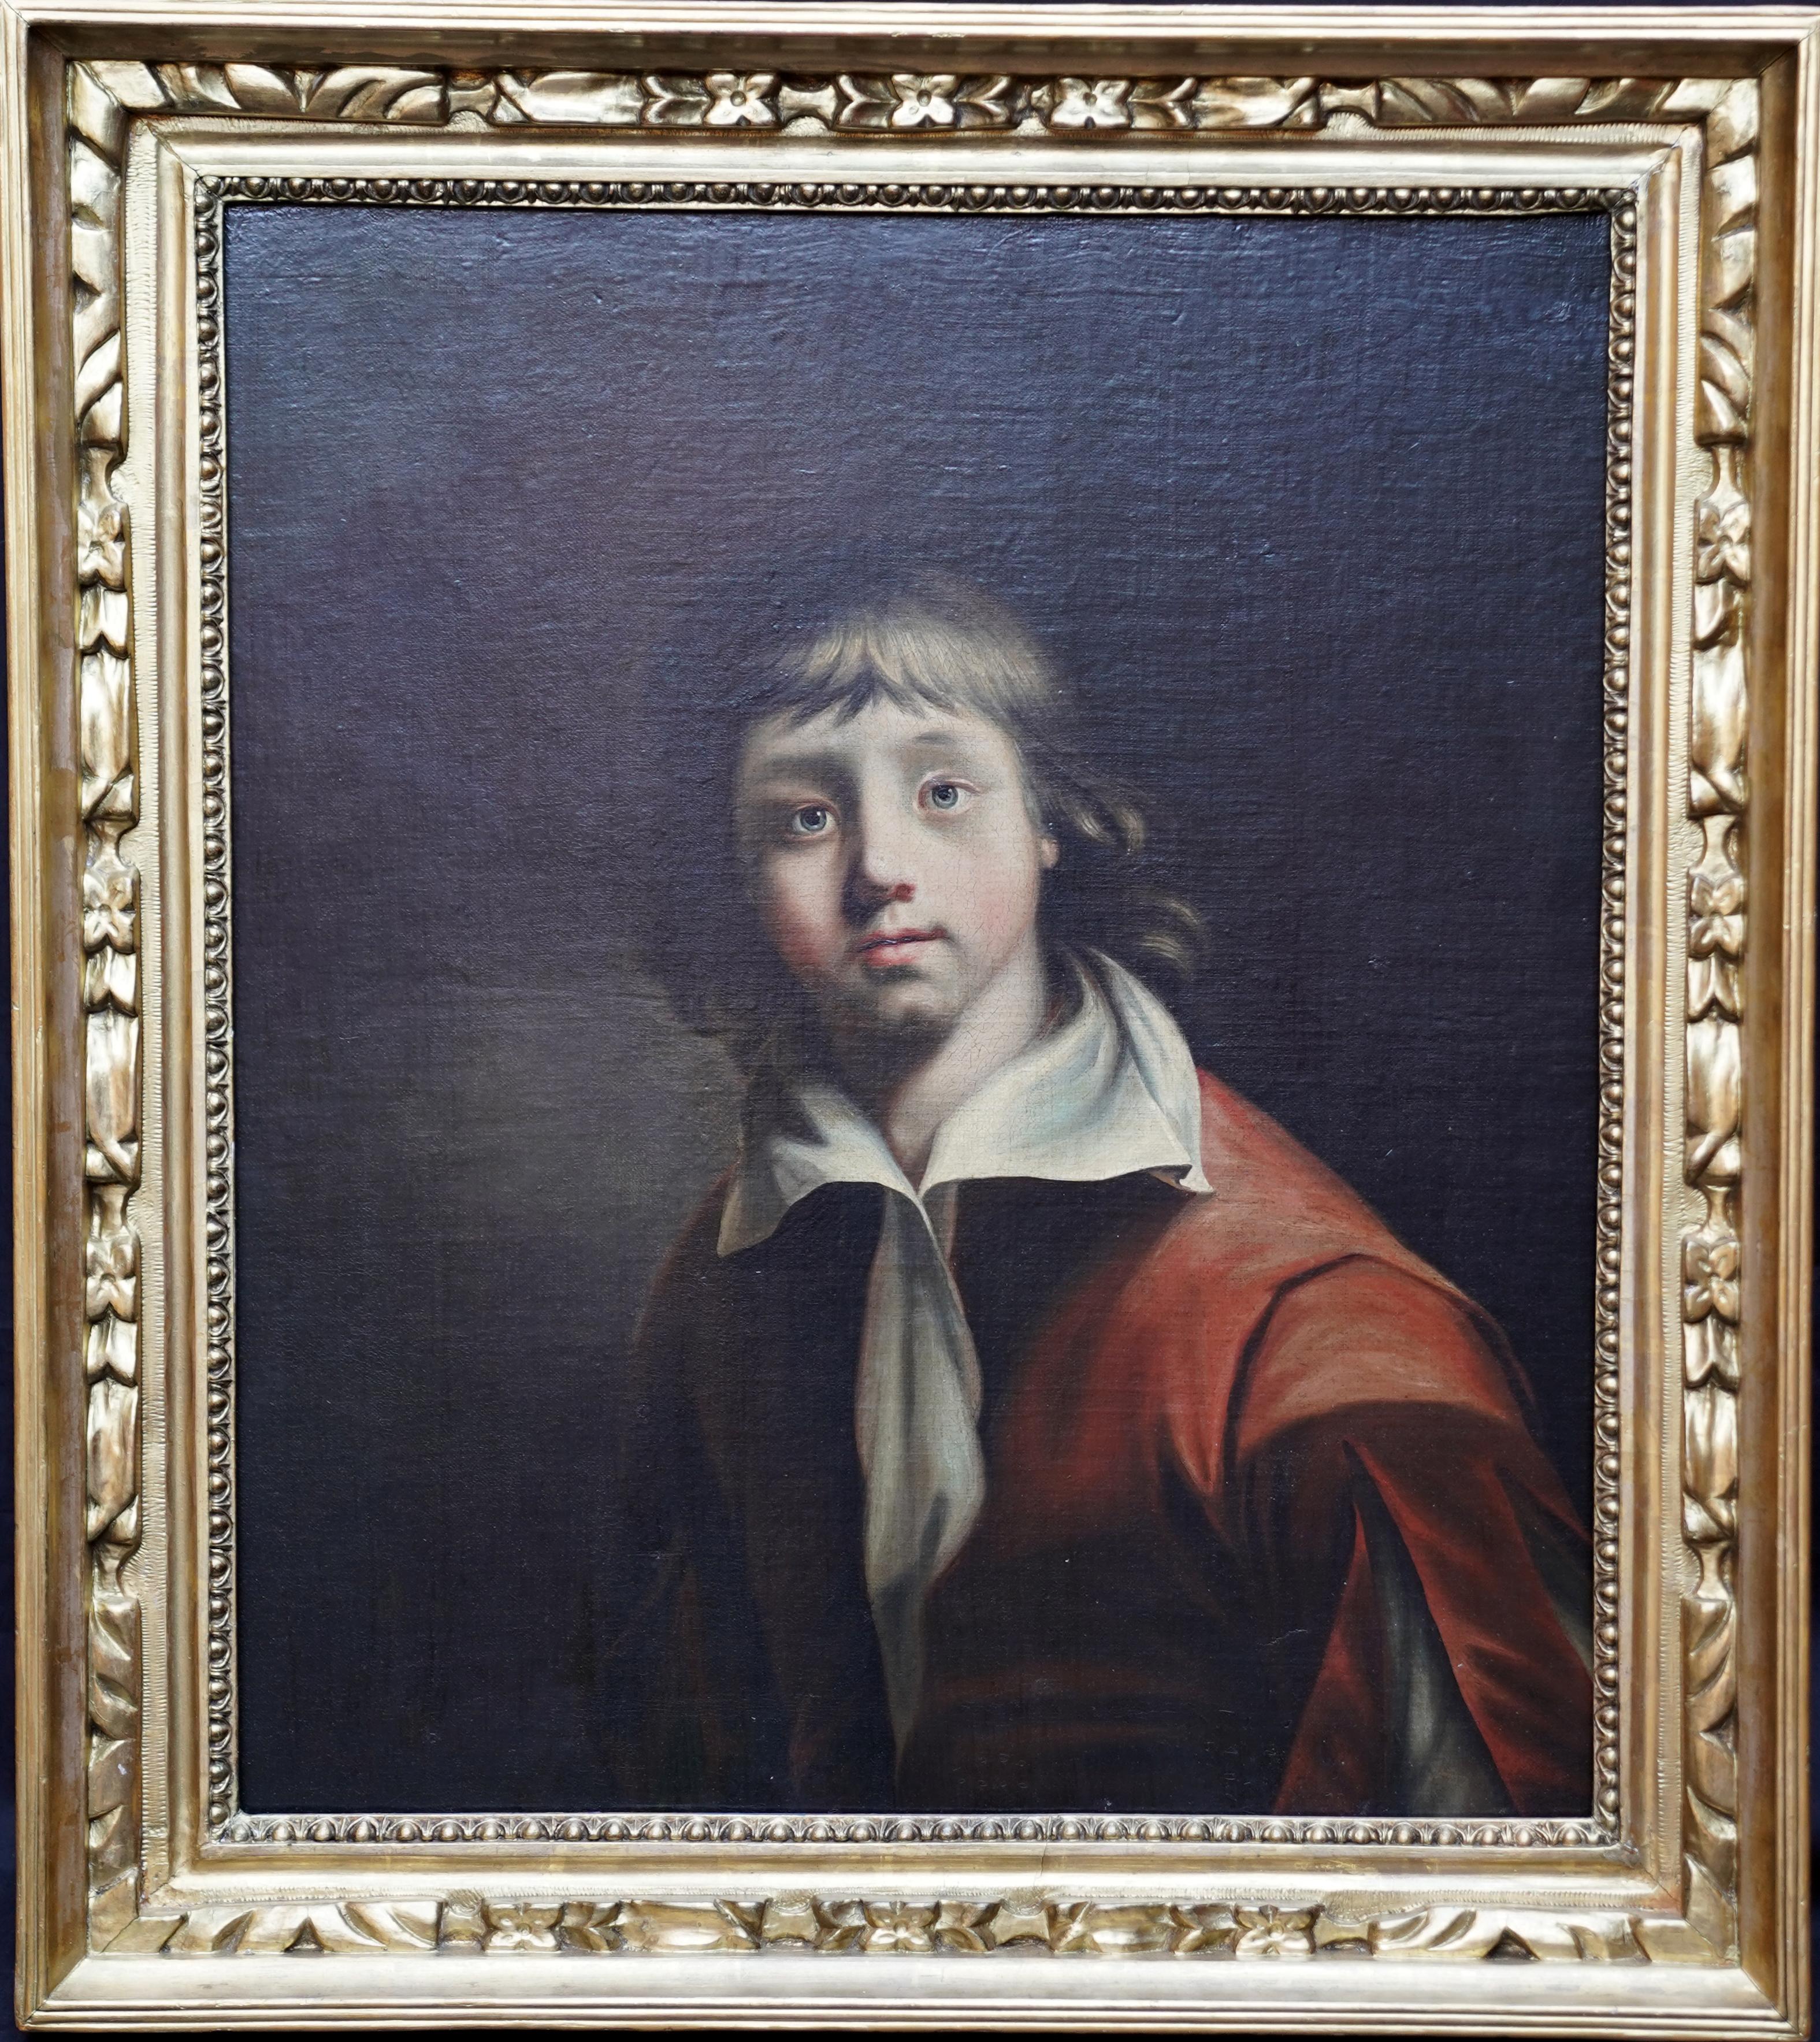 Joseph Wright of Derby Portrait Painting – Porträt eines jungen Jungen - Britische Kunst 1780 Altmeister männliches Porträt Ölgemälde